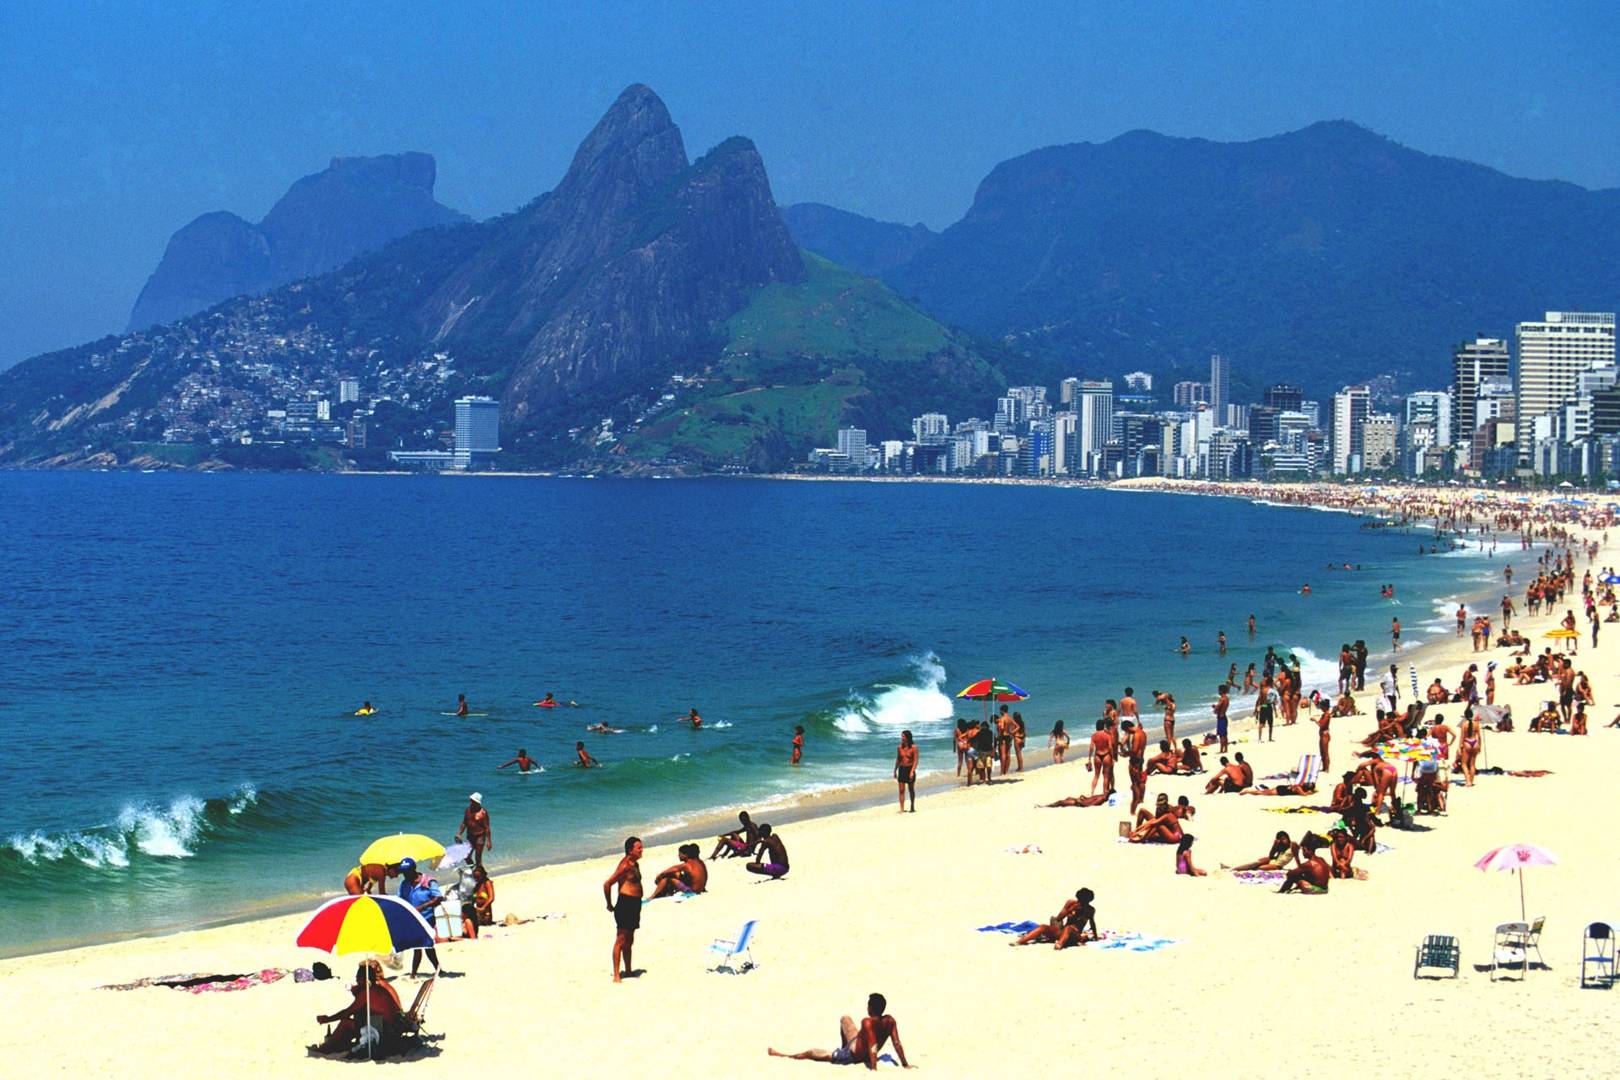 let's take a trip to brazil